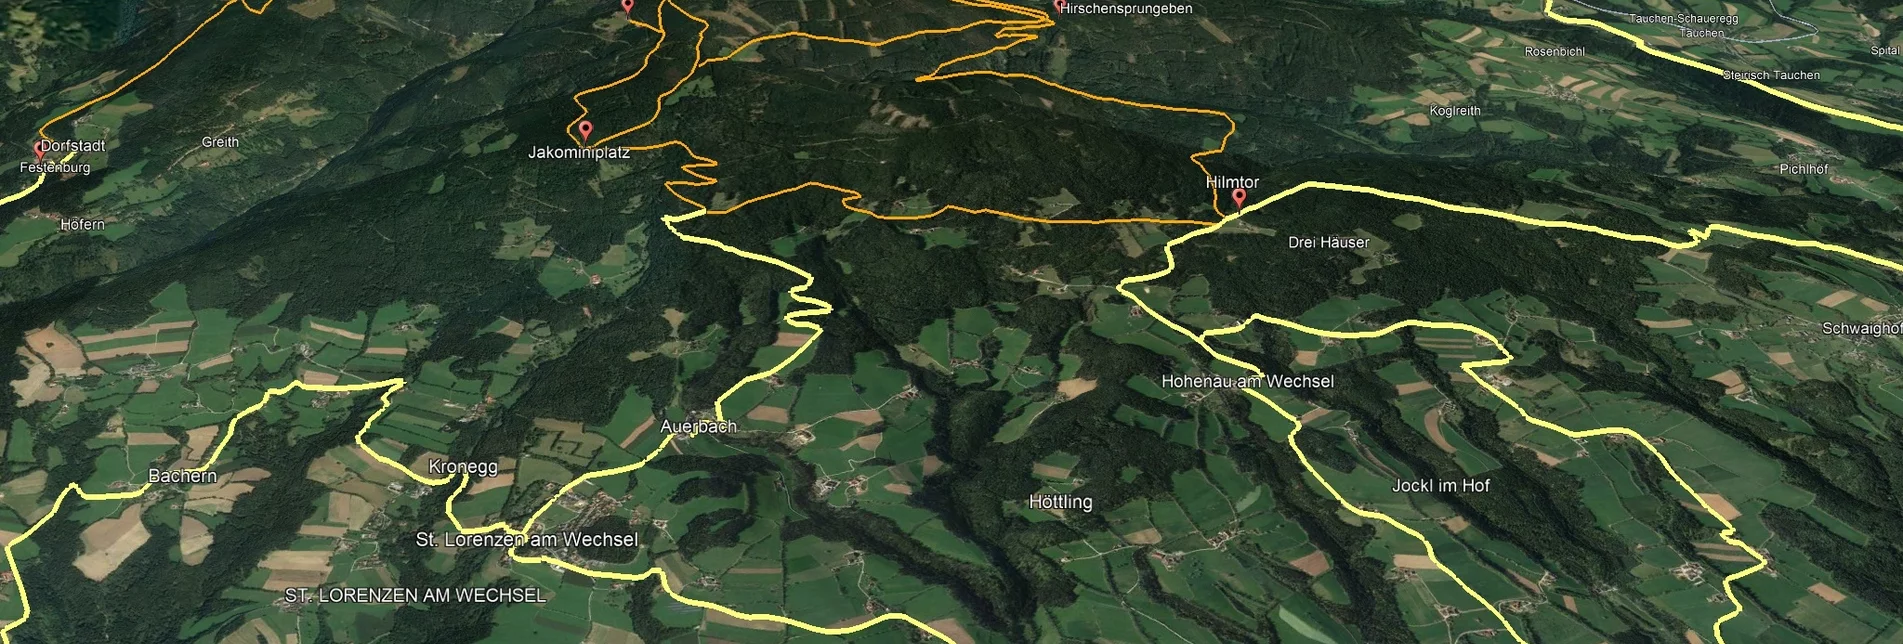 Mountain Biking Styrian Wexl Trails - feeder road Dechantskirchen to Thalberg (connection) - Touren-Impression #1 | © Verein Tourismusentwicklung Steirischer Wechsel